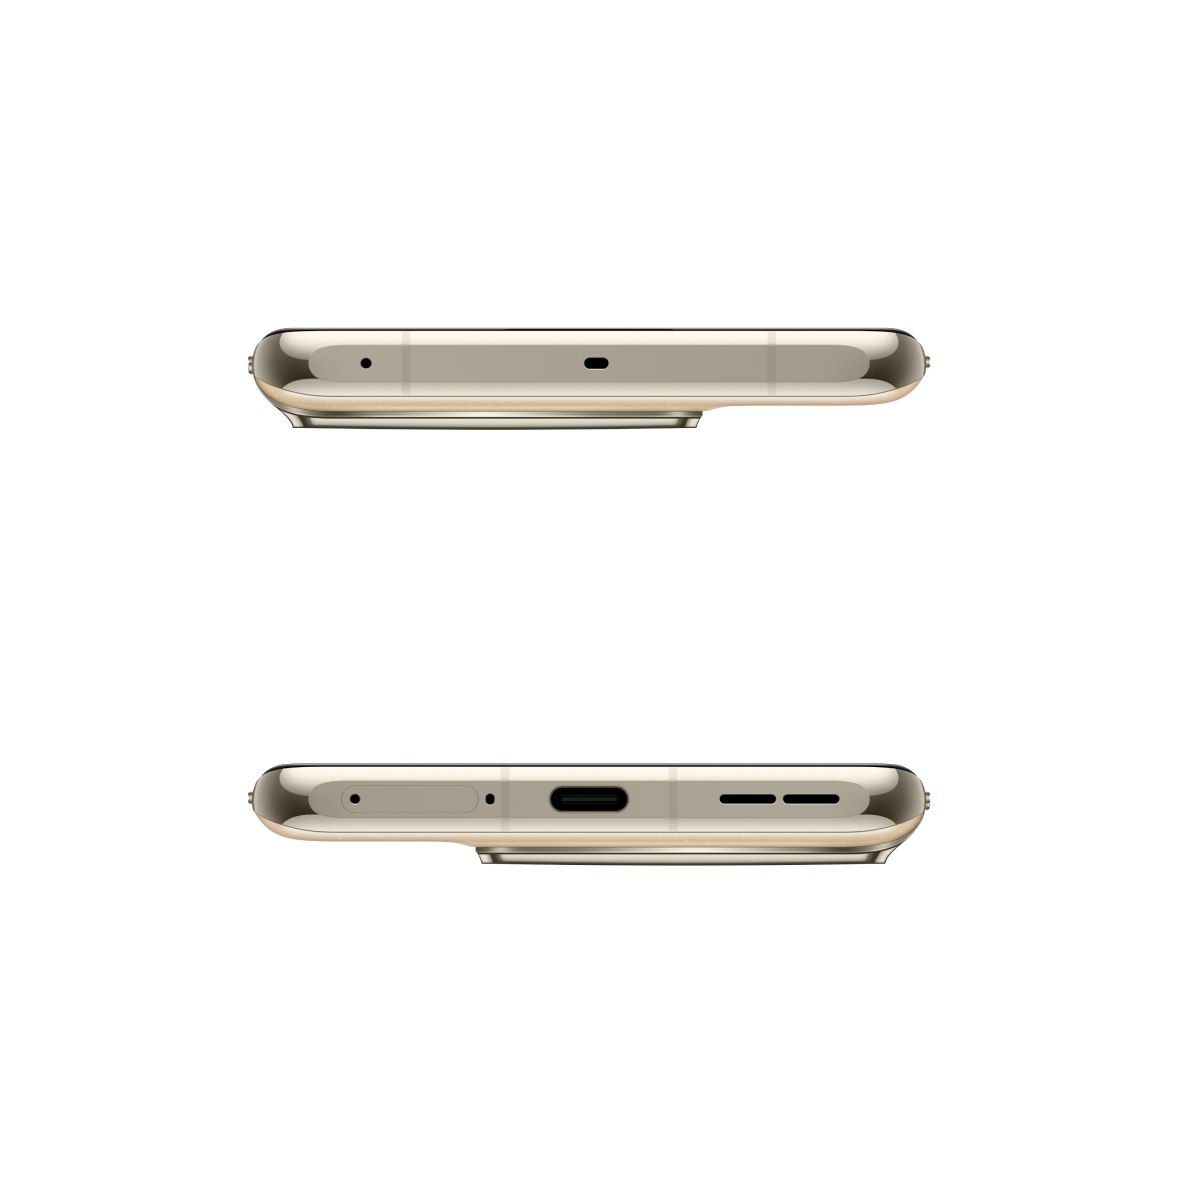 OnePlus 11 Dual SIM 5G